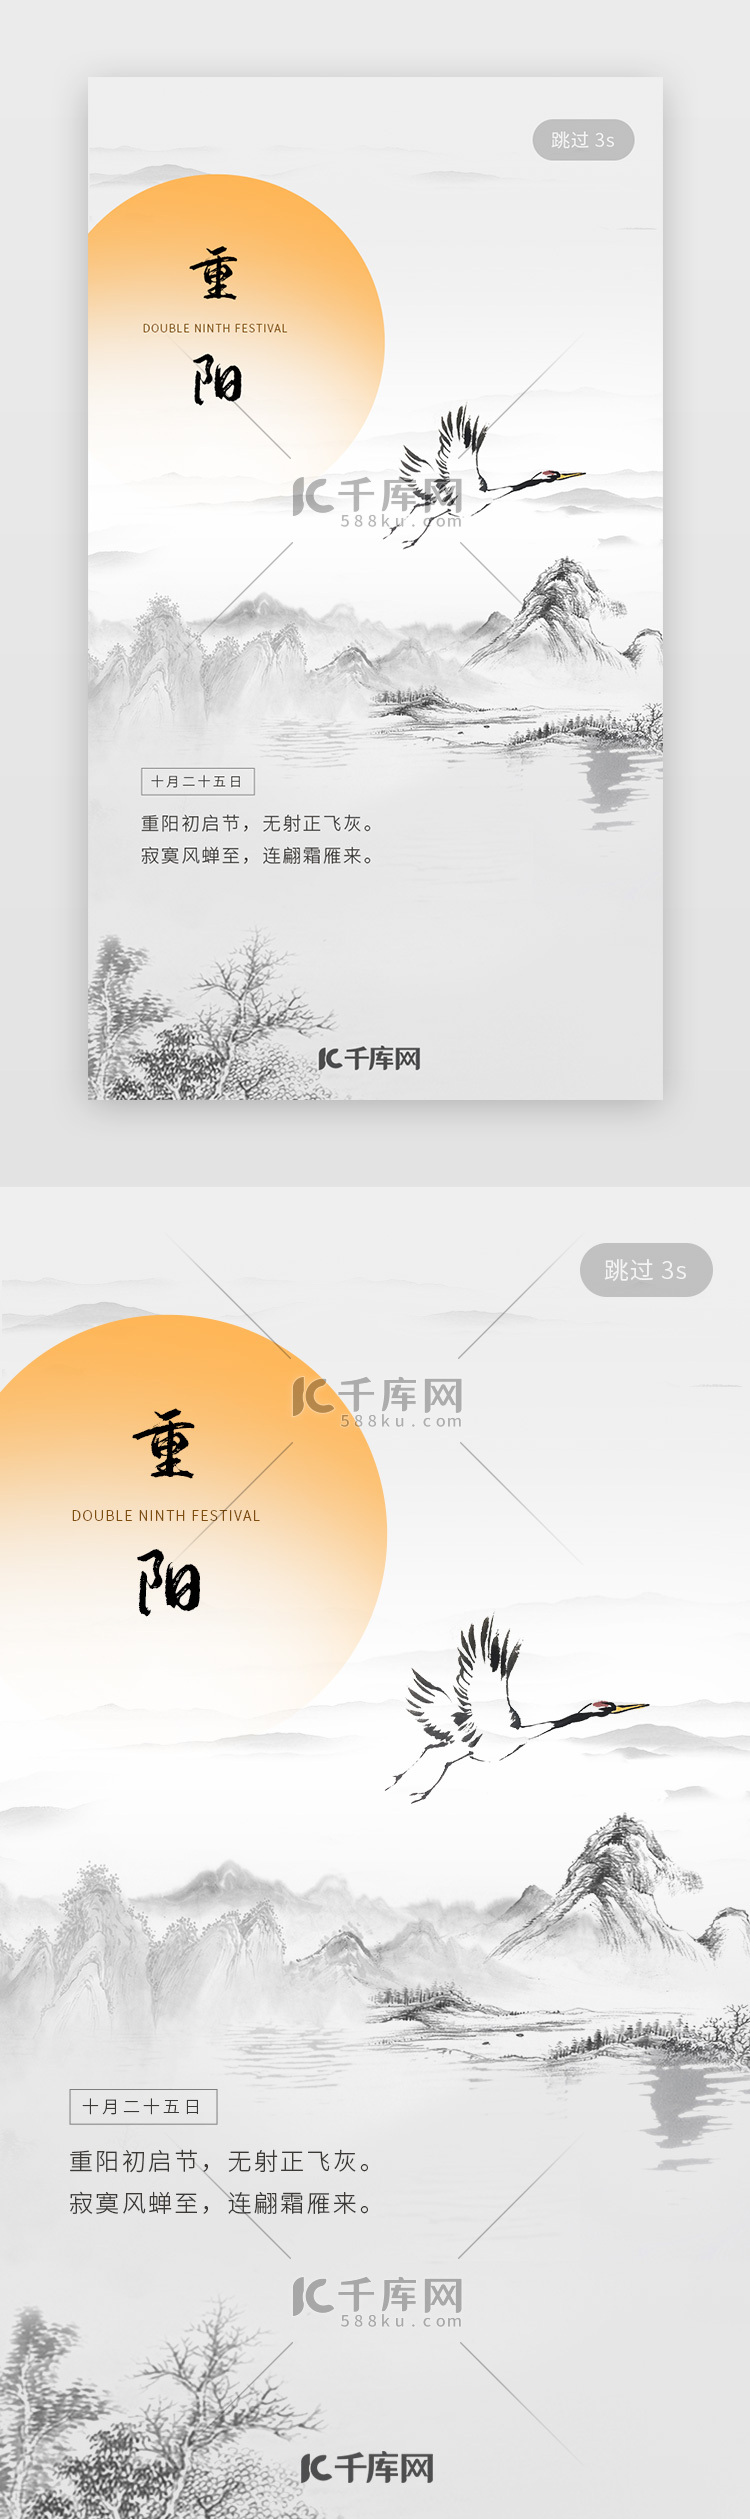 中国传统节日重阳节手机闪屏